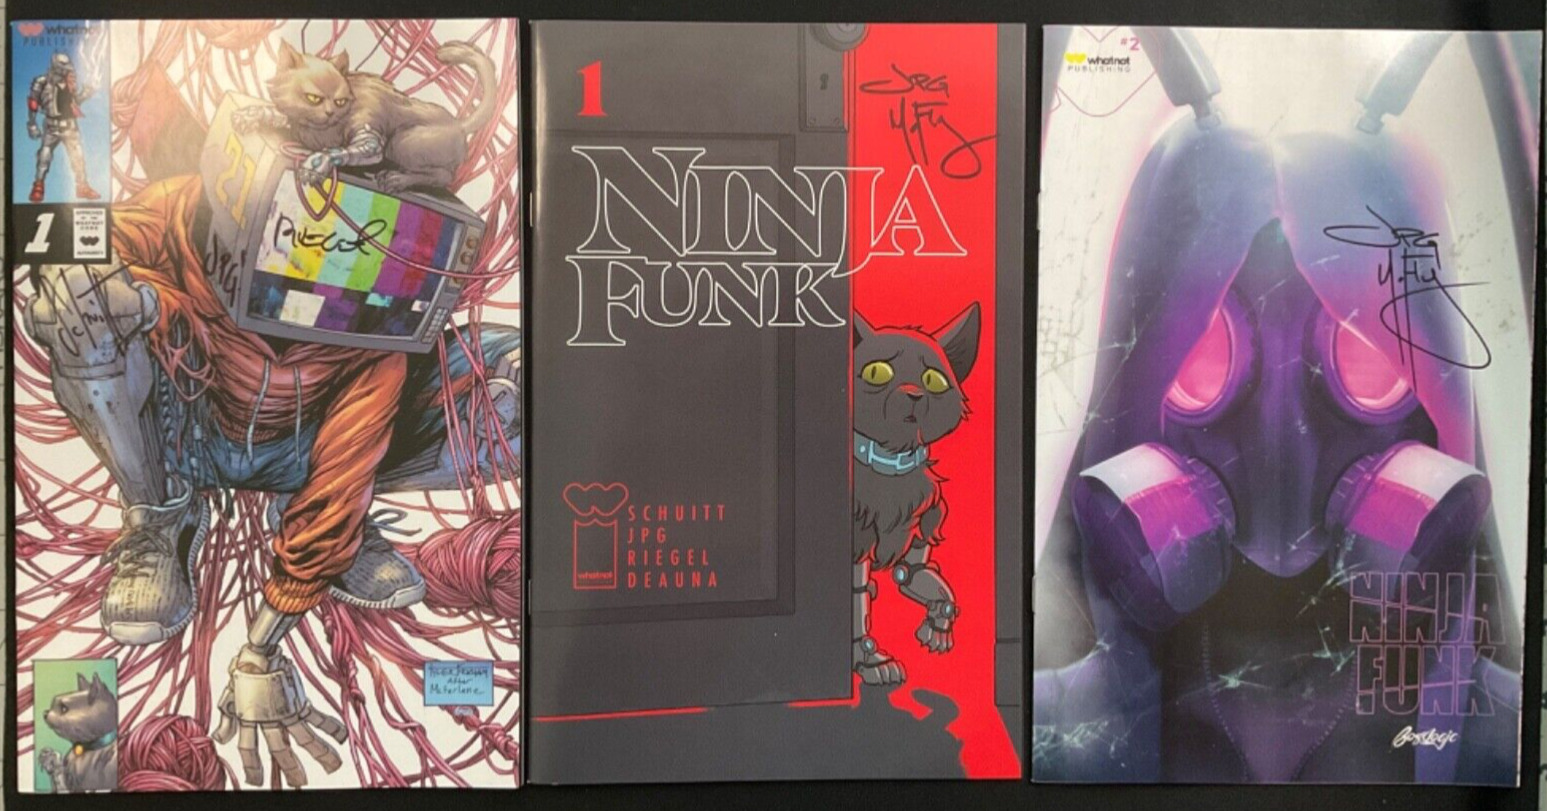 Ninja Funk Trifecta 3 signed Books #1x2 , #2 Variants Signed JPG, Riegel,Schuitt